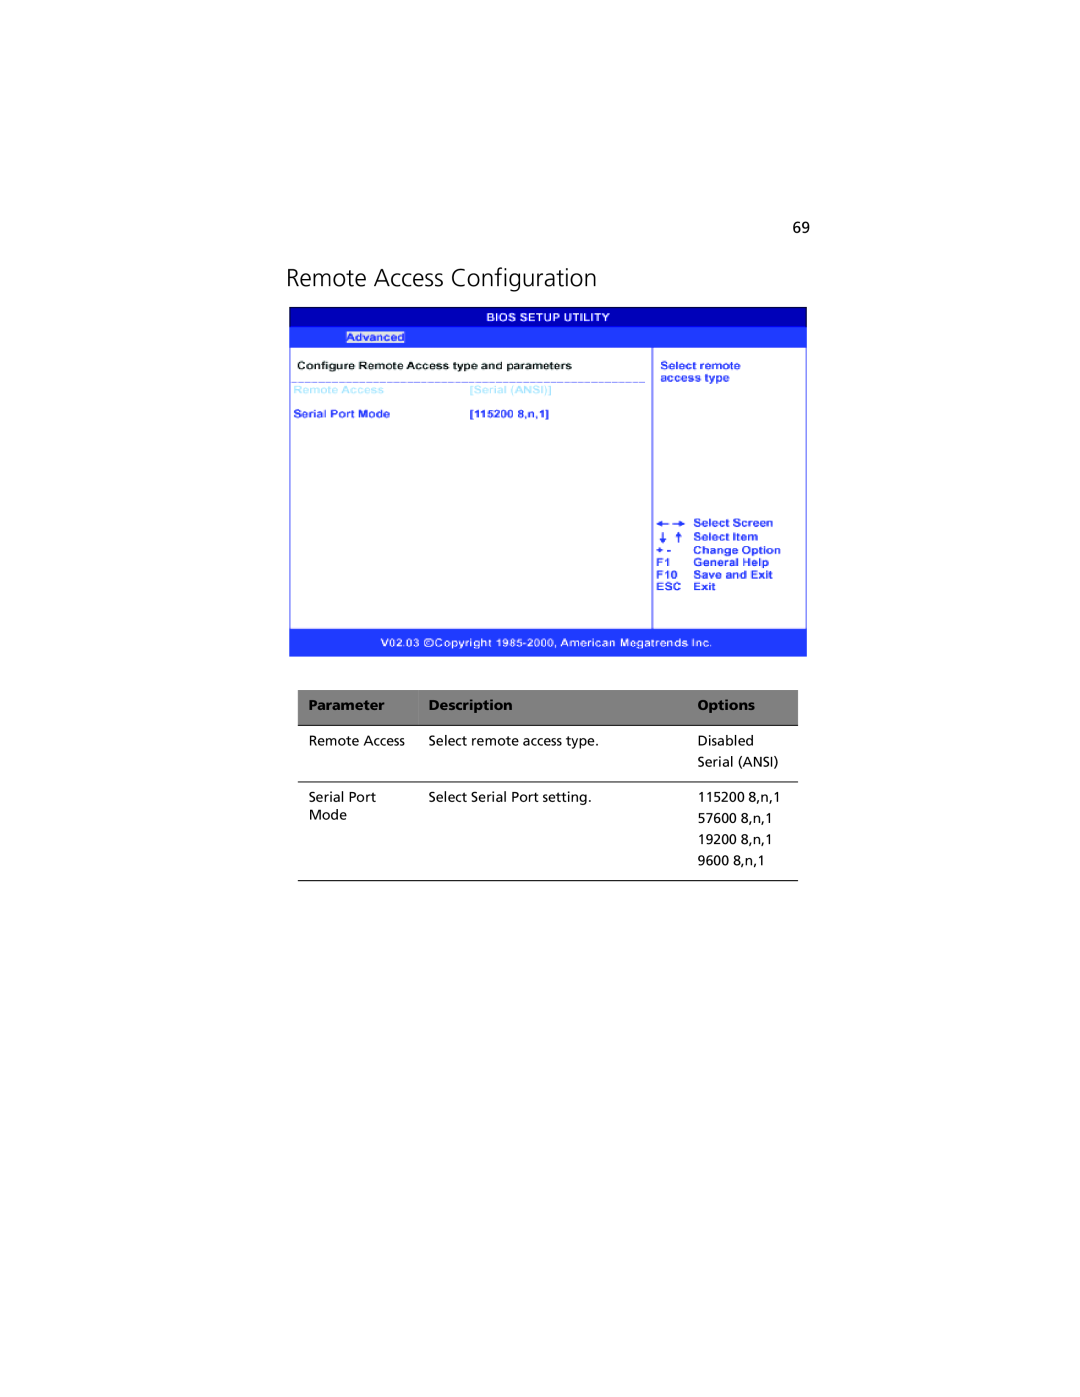 Acer G301 manual Remote Access Configuration, Parameter, Description, Options 